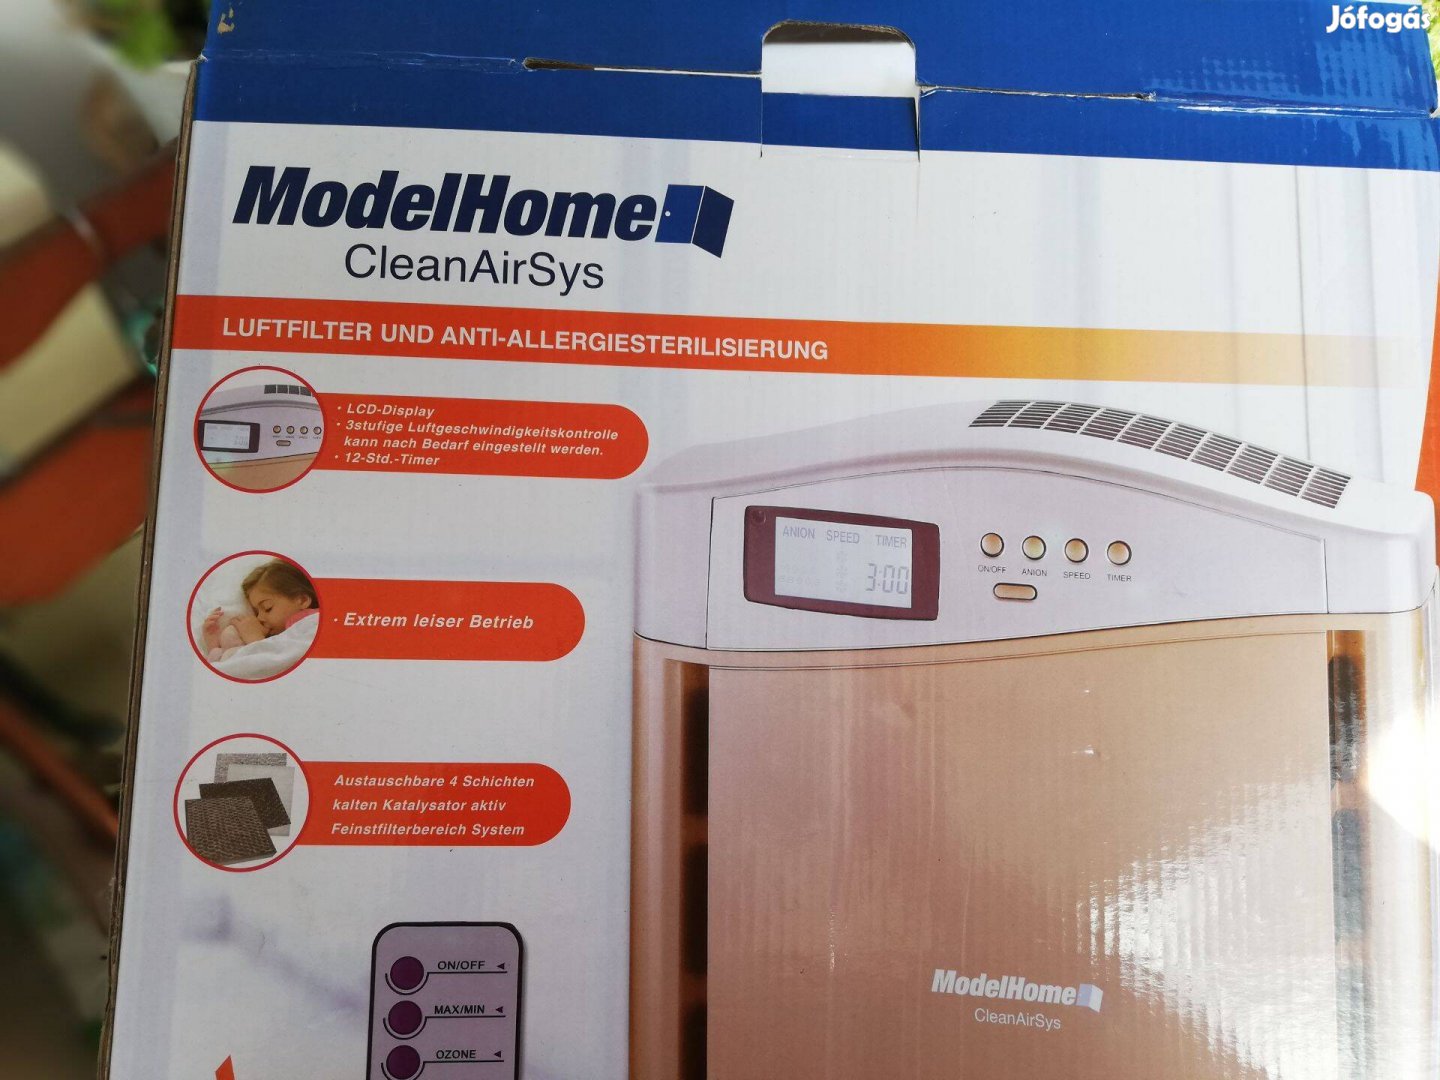 Modelhome clean air sys légtisztító - távvezérlő nélkül 5000 forint